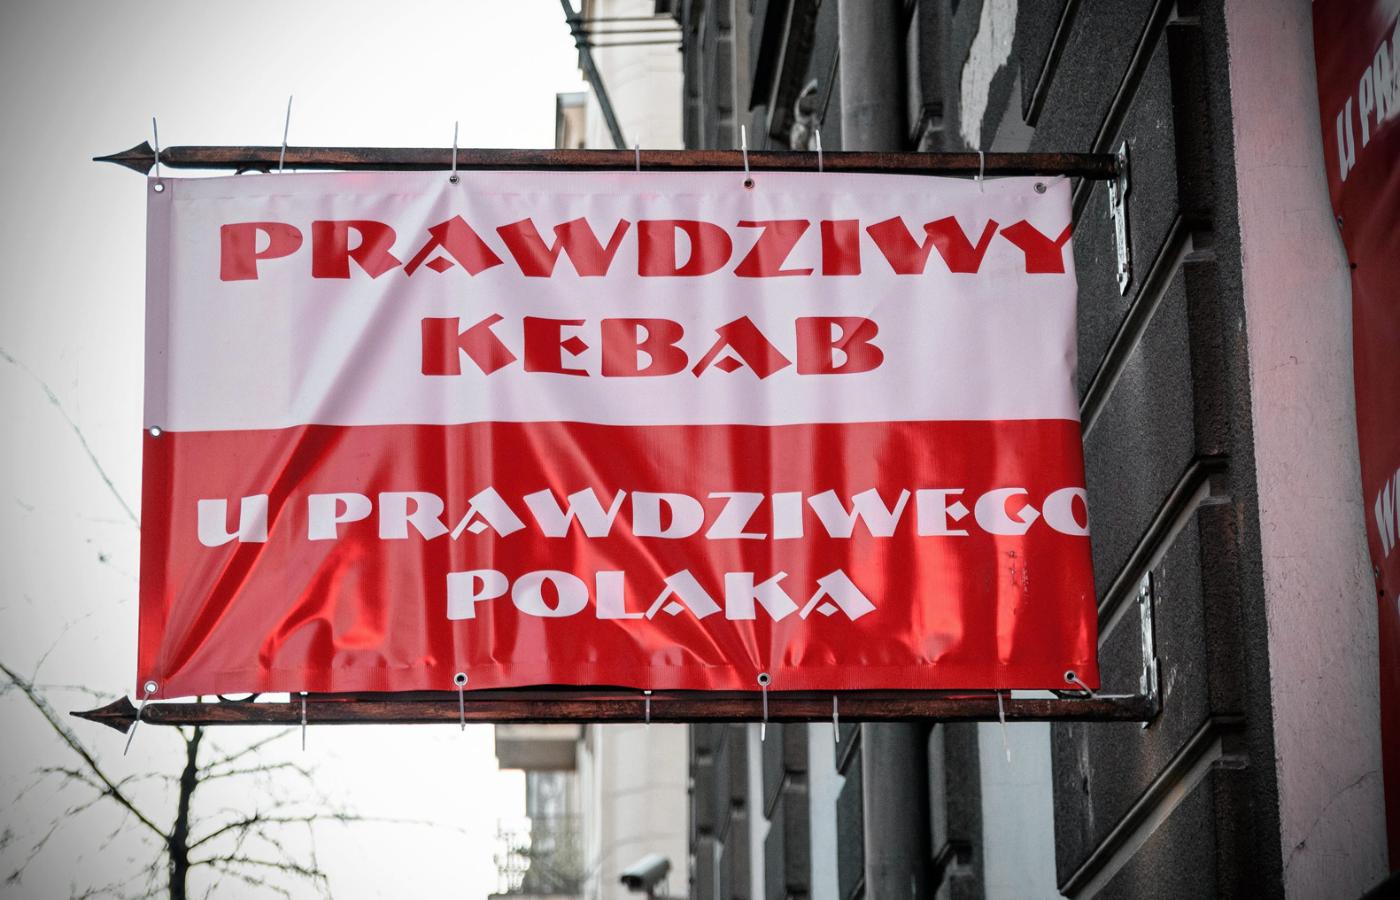 Są poważne plany, by polskim kebabem karmić Marsz Niepodległości w nadchodzącym listopadzie, z okazji stulecia niepodległości naszego kraju.